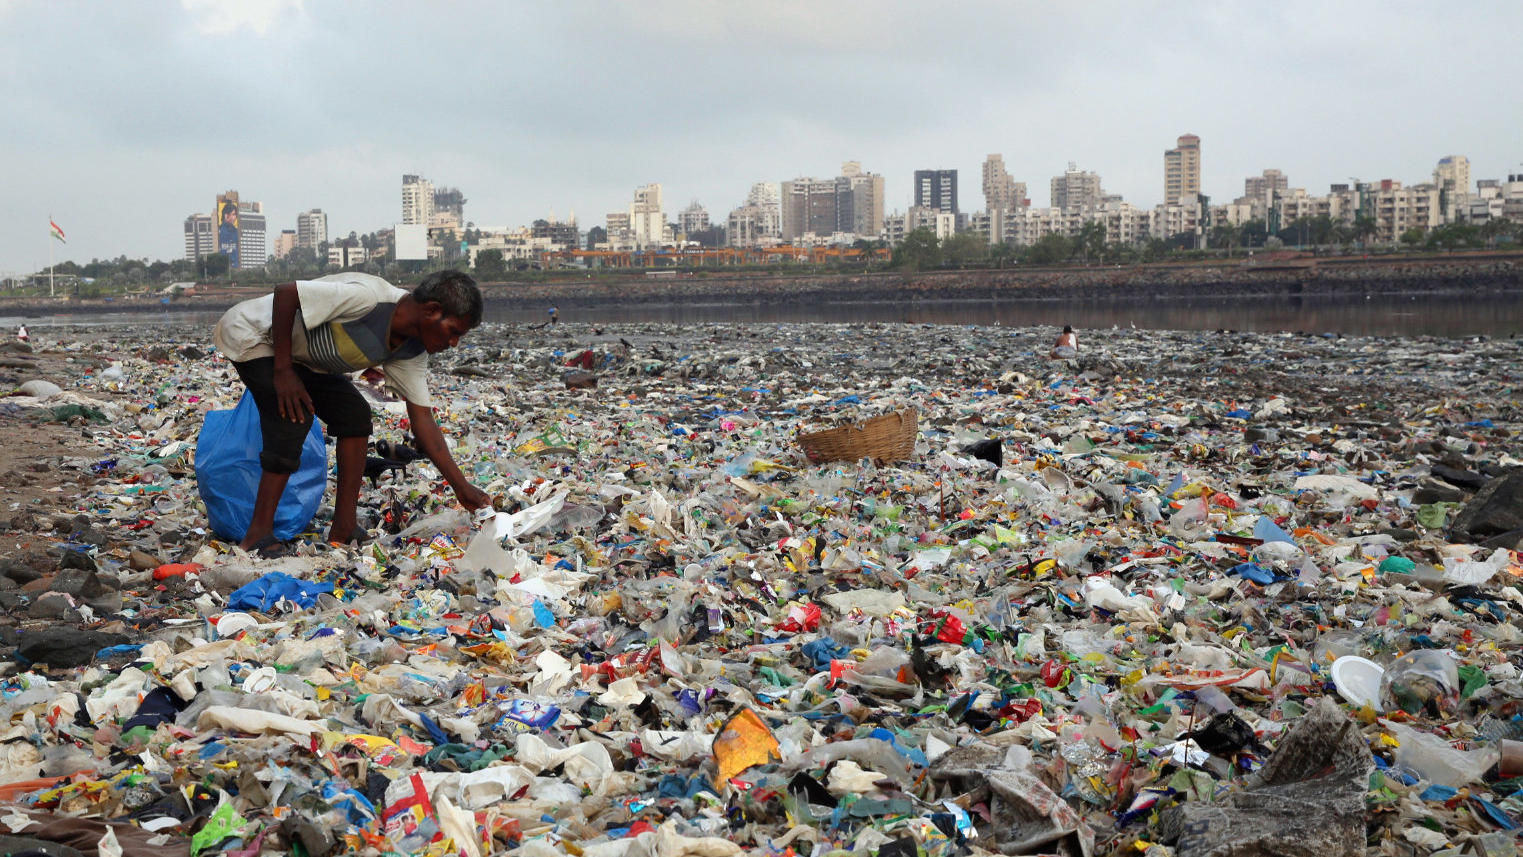 ARCHIV - 04.06.2018, Indien, Mumbai: Ein Mann sammelt Plastik und andere wiederverwertbare Materialen an der von Plastiktüten und sonstigen Müll übersäten Küste des Arabisches Meeres.   (zu dpa "Bundesregierung will Exportverbot für unsortierten Plas